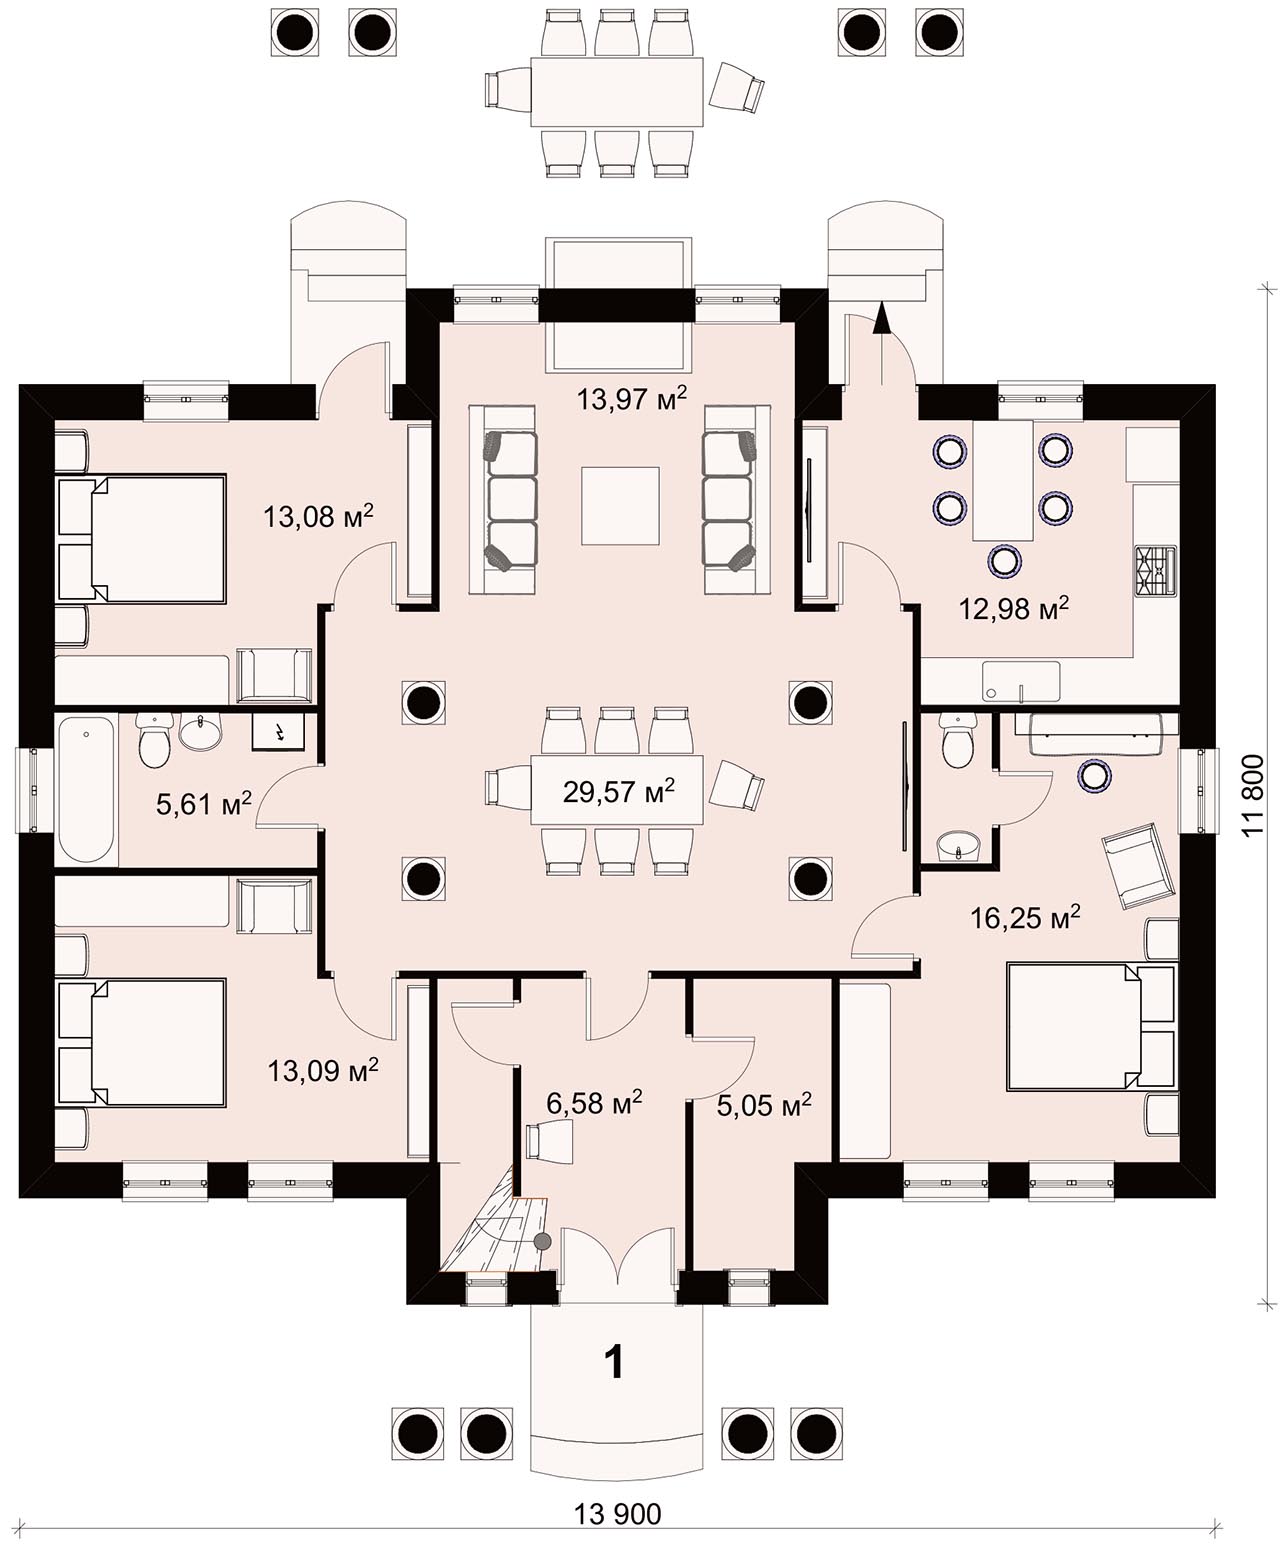 Варианты планировки одноэтажного дома размером 12х12 м